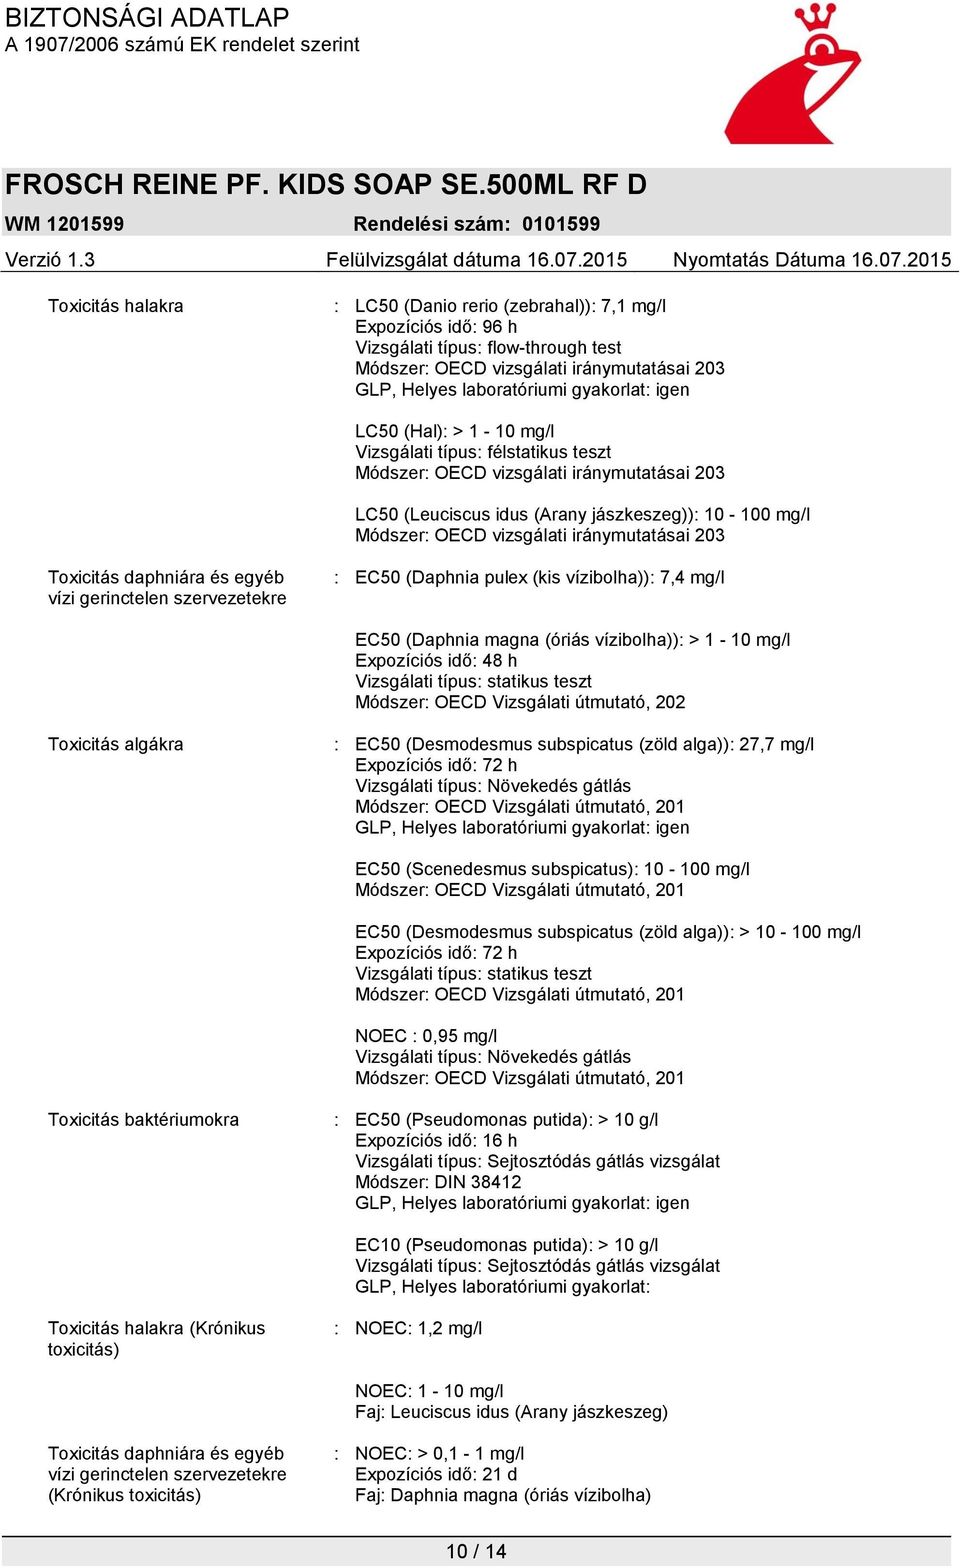 vízi gerinctelen szervezetekre : EC50 (Daphnia pulex (kis vízibolha)): 7,4 mg/l EC50 (Daphnia magna (óriás vízibolha)): > 1-10 mg/l Expozíciós idő: 48 h Vizsgálati típus: statikus teszt Módszer: OECD